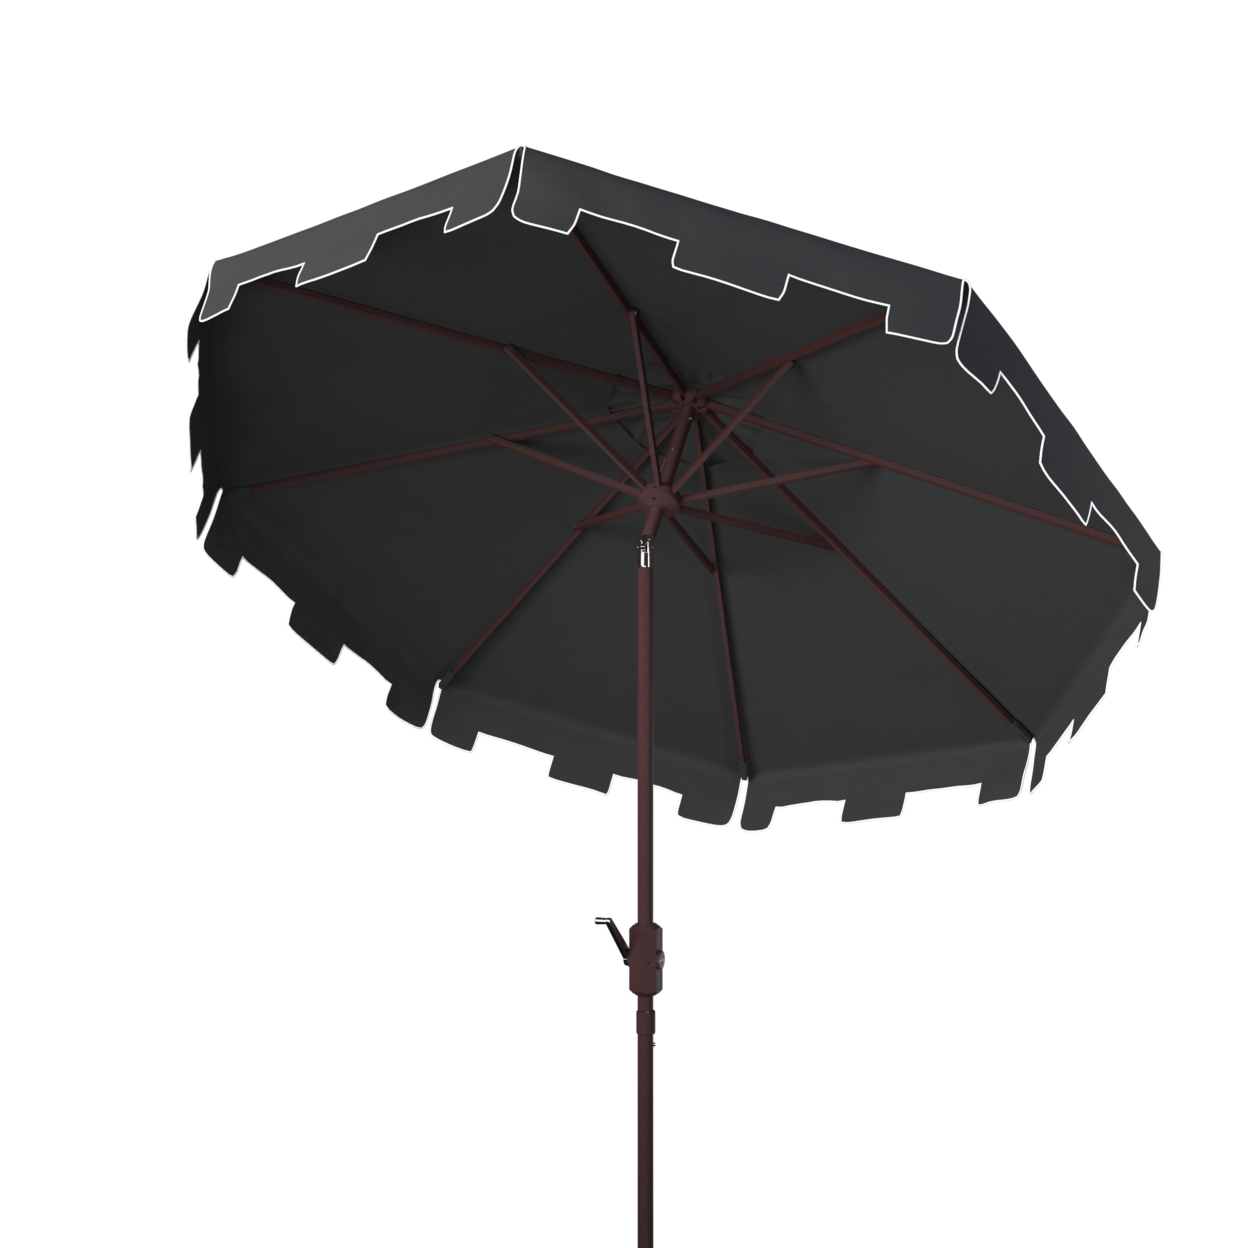 SAFAVIEH Outdoor Collection Zimmerman 11-Foot Round Market Umbrella Black